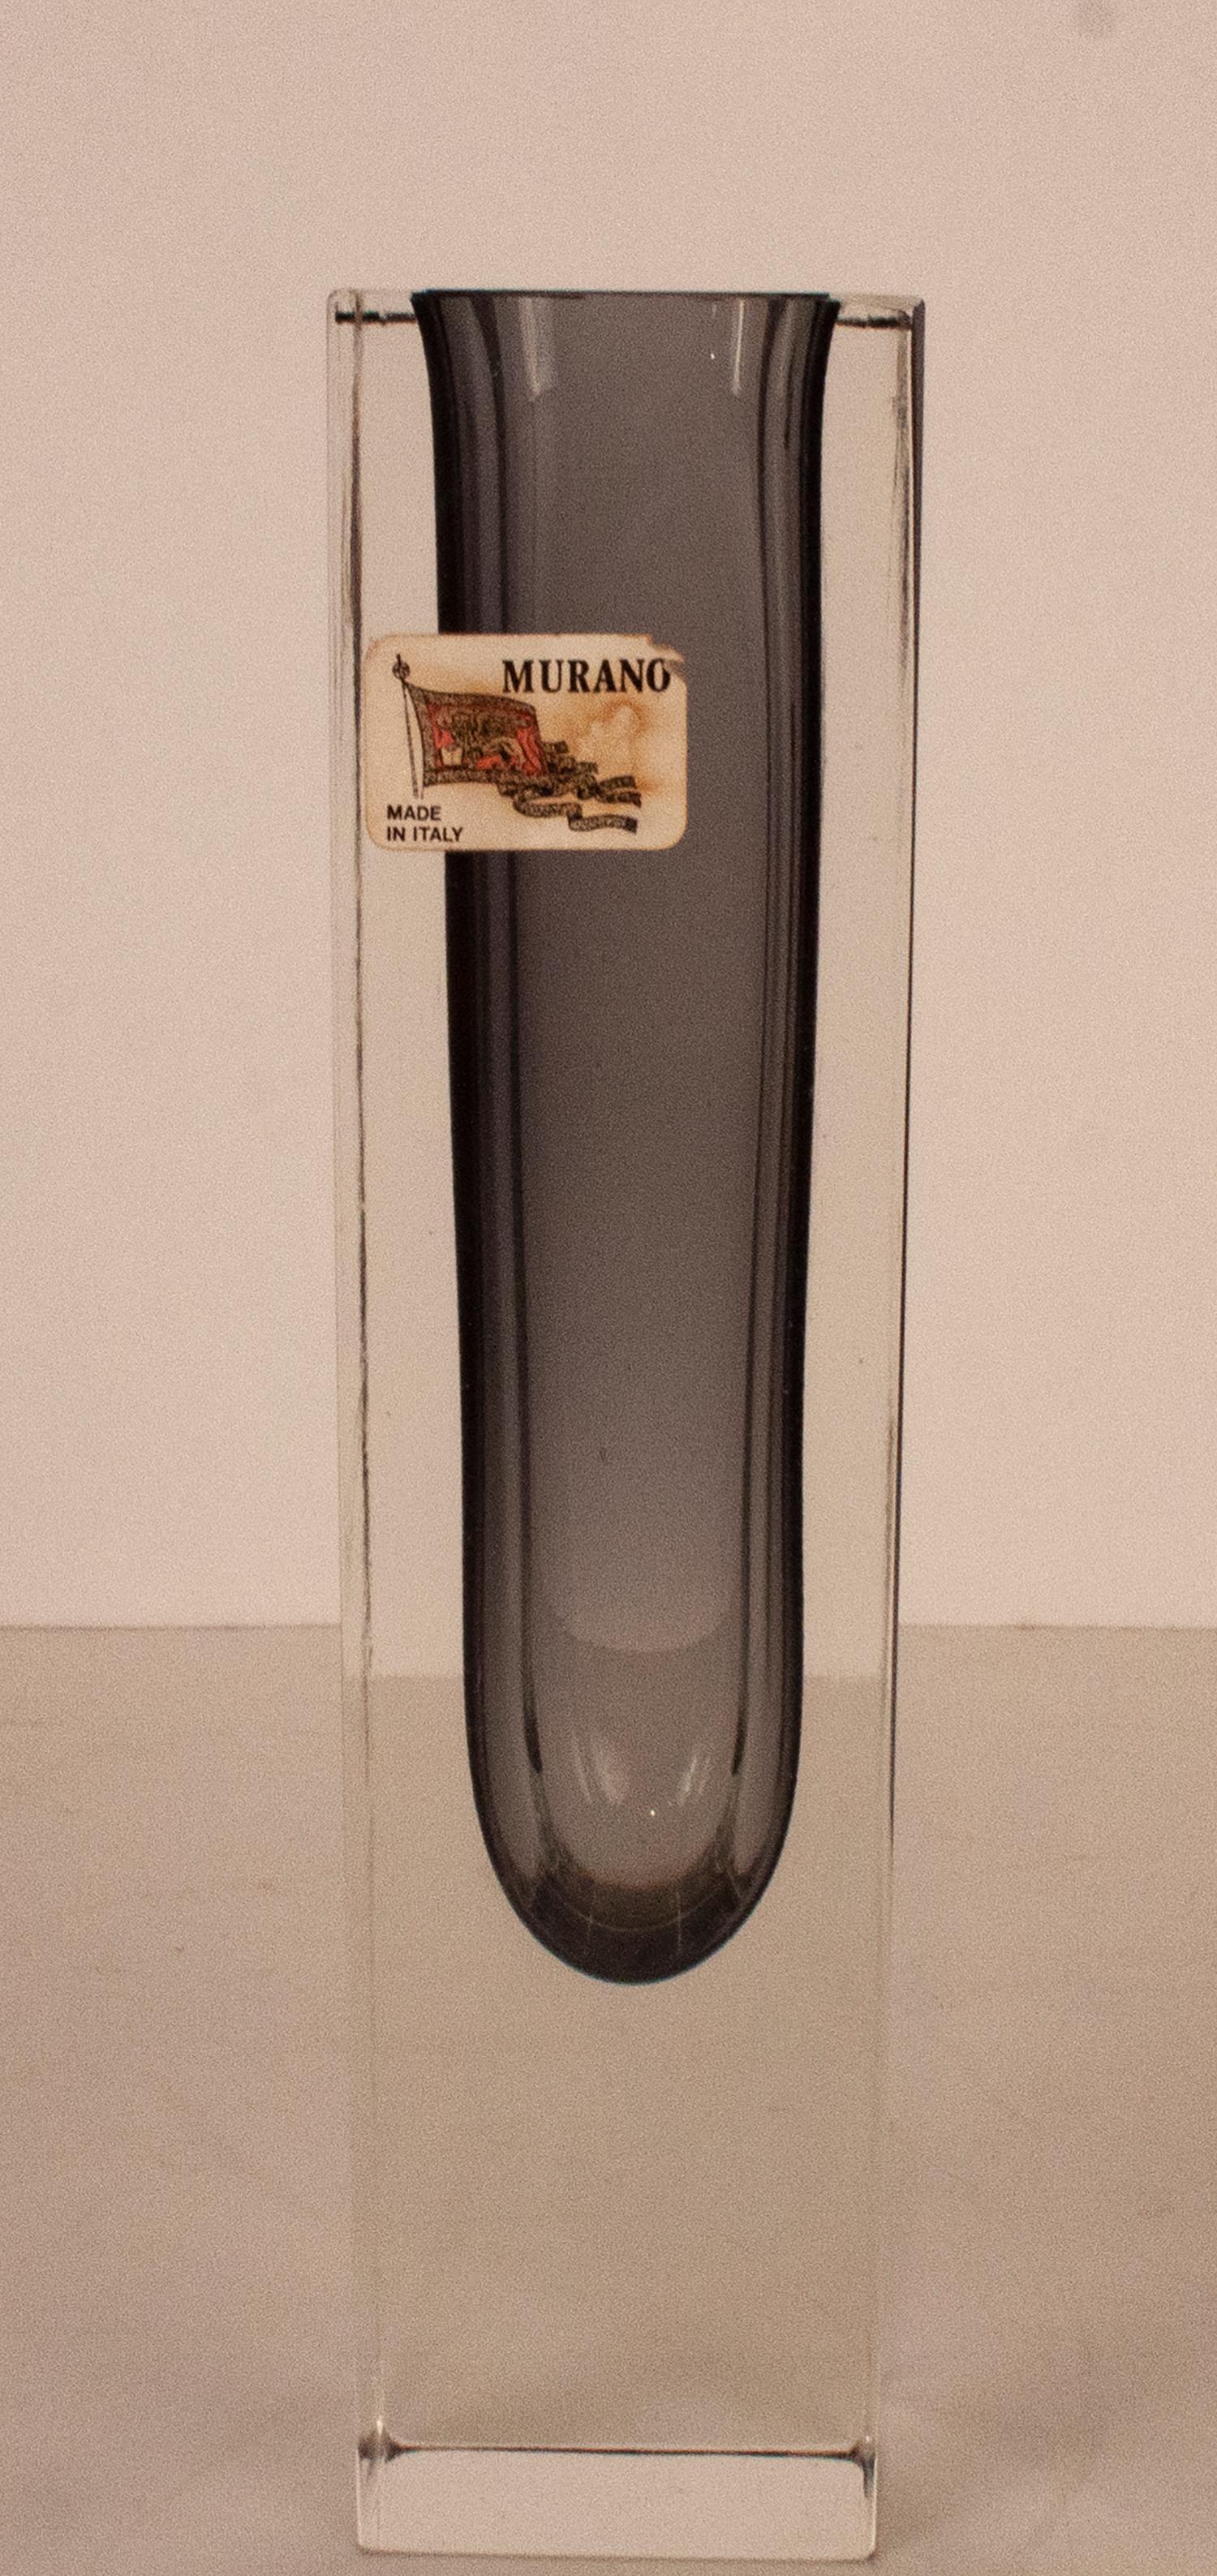 Vase de Murano en verre d'art soufflé à la bouche, transparent et gris. Design italien, années 1960.
Mesures : 5 x 5 cm. Hauteur 20cm.
Avec son étiquette originale
En parfait état.